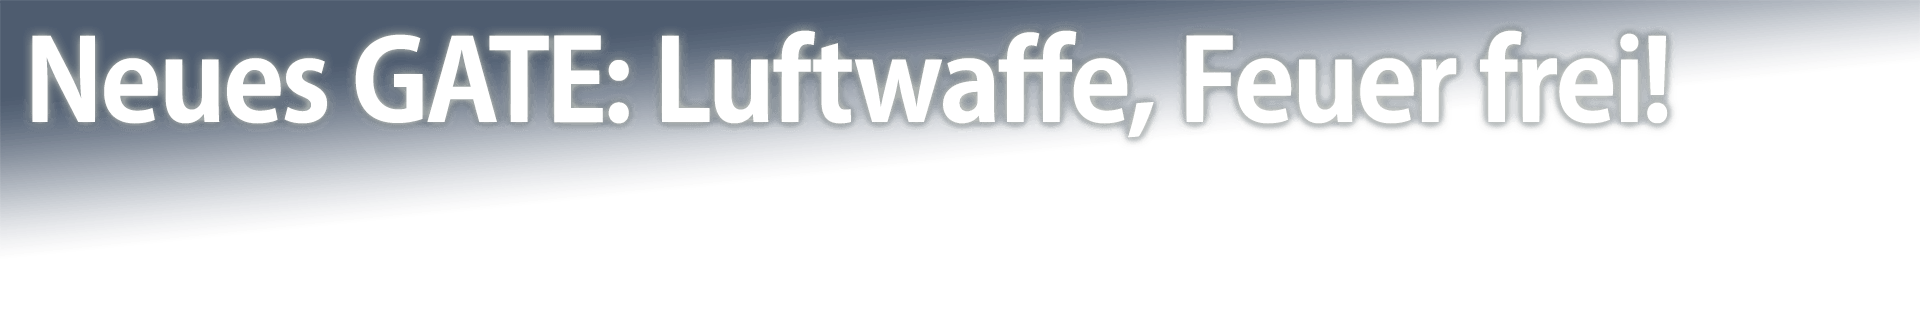 Neues GATE: Luftwaffe, Feuer frei!